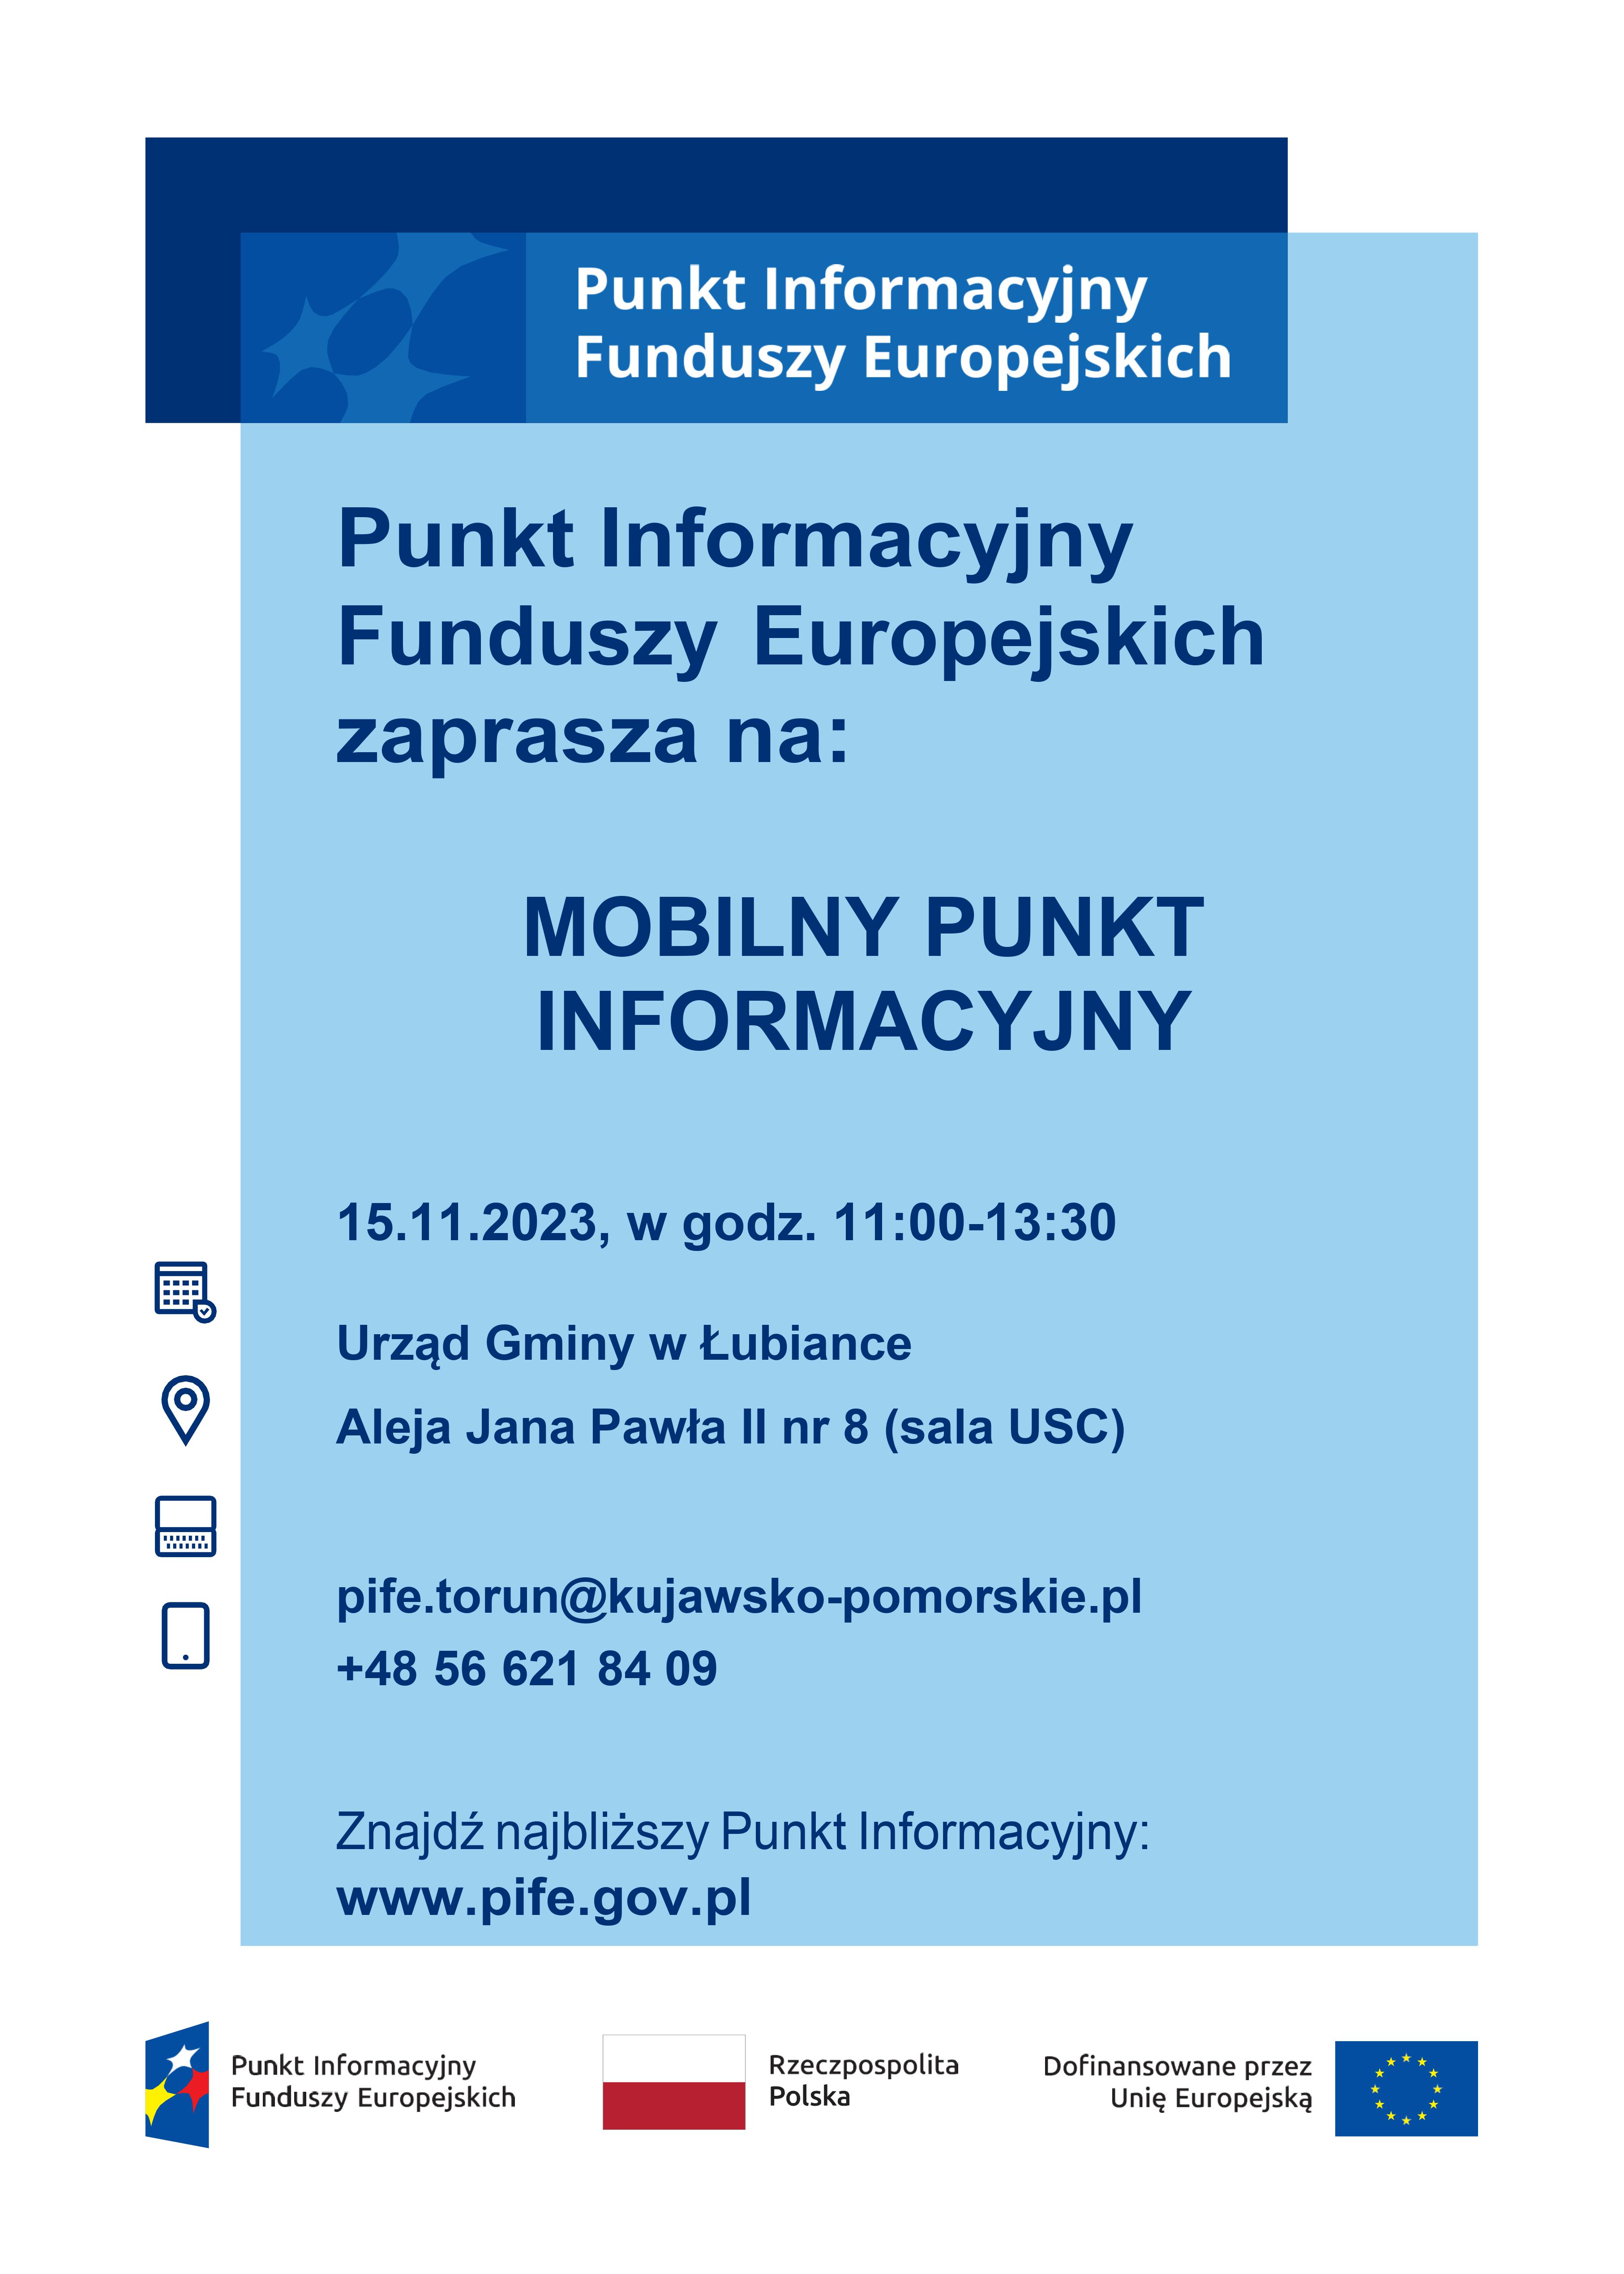 Mobilny Punkty Informacyjny Funduszy Europejskich - 15.11.2023 r.